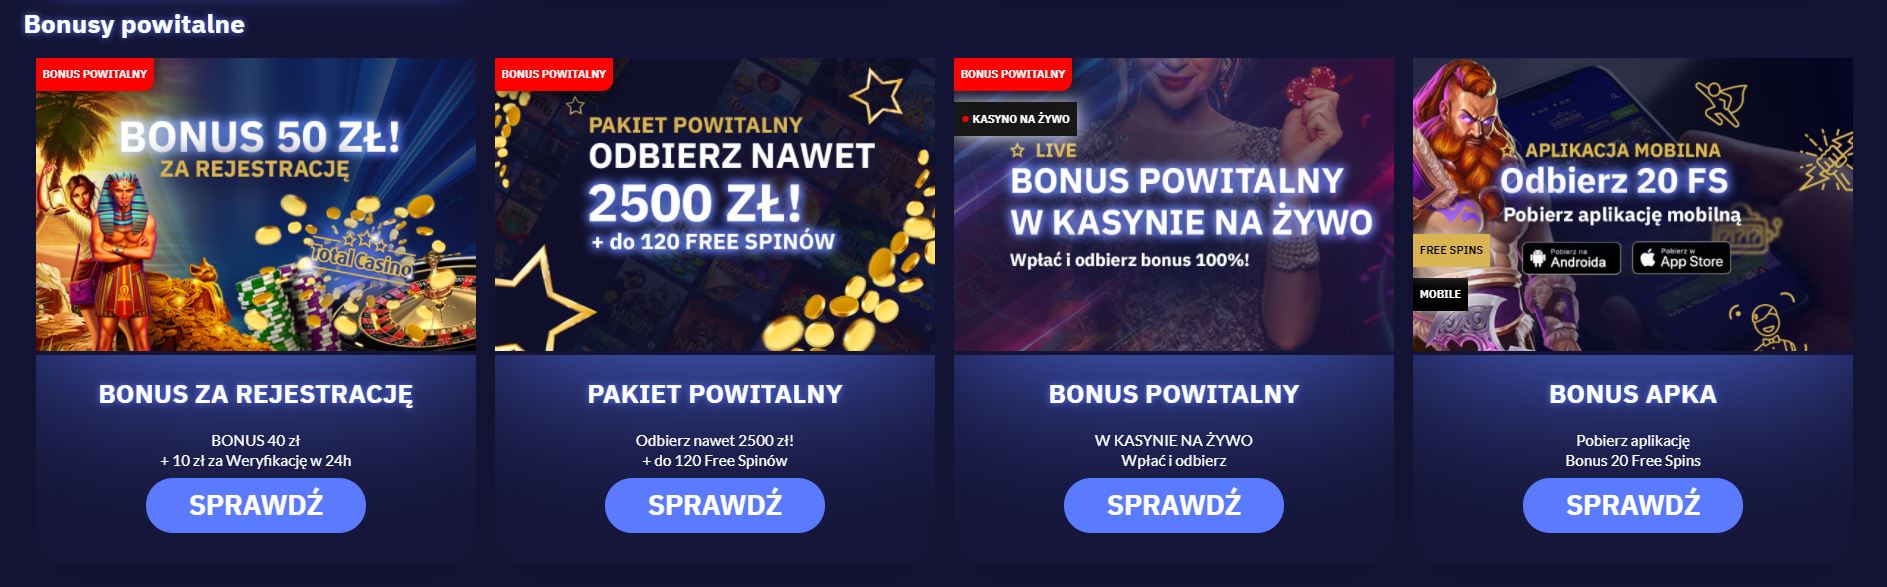 total casino bonusy screenshot